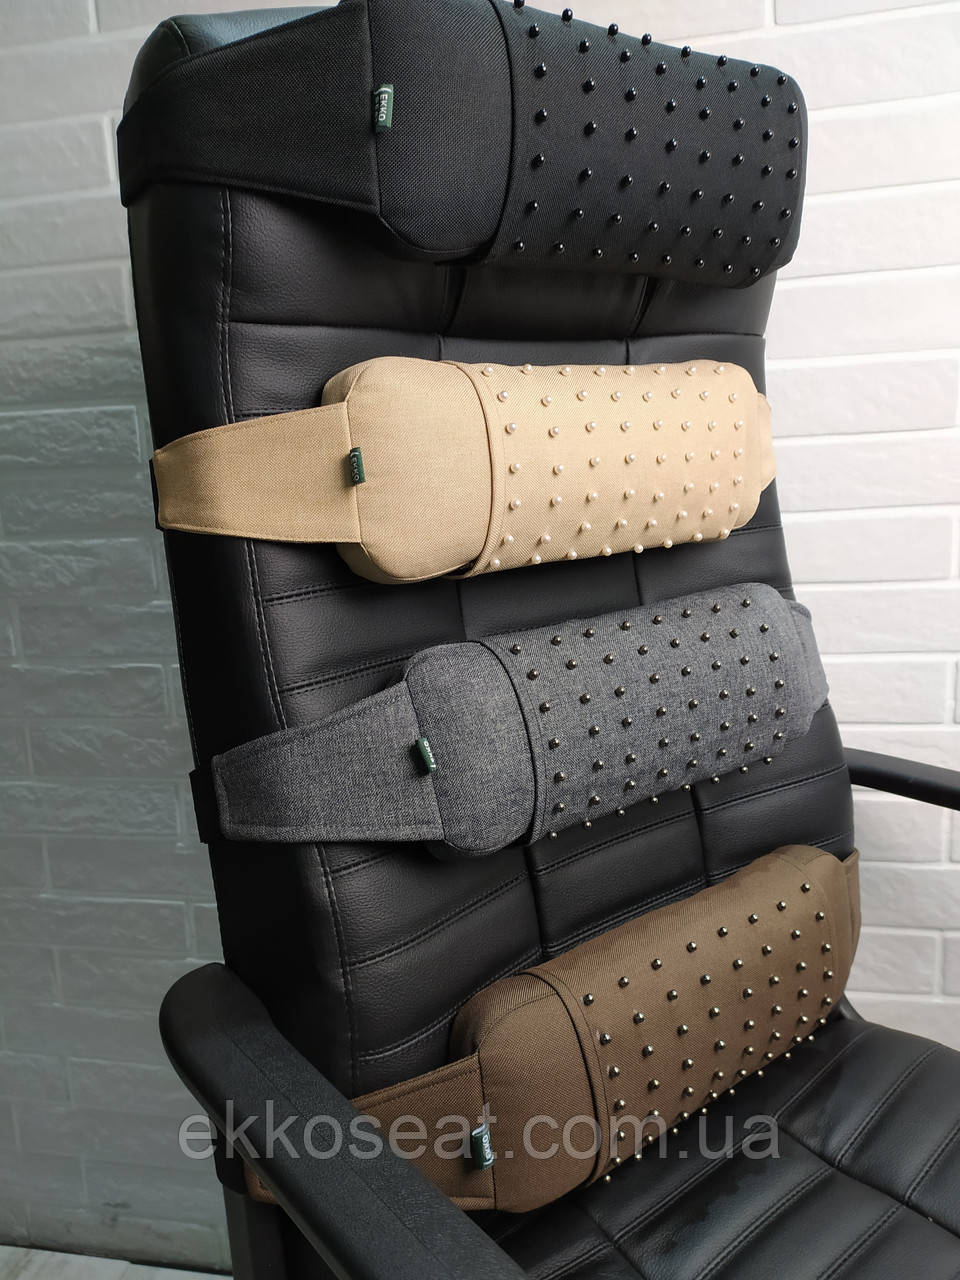 Ортопедичний упор під спину EKKOSEAT з масажною знімною накидкою для офісних і автомобільних крісел